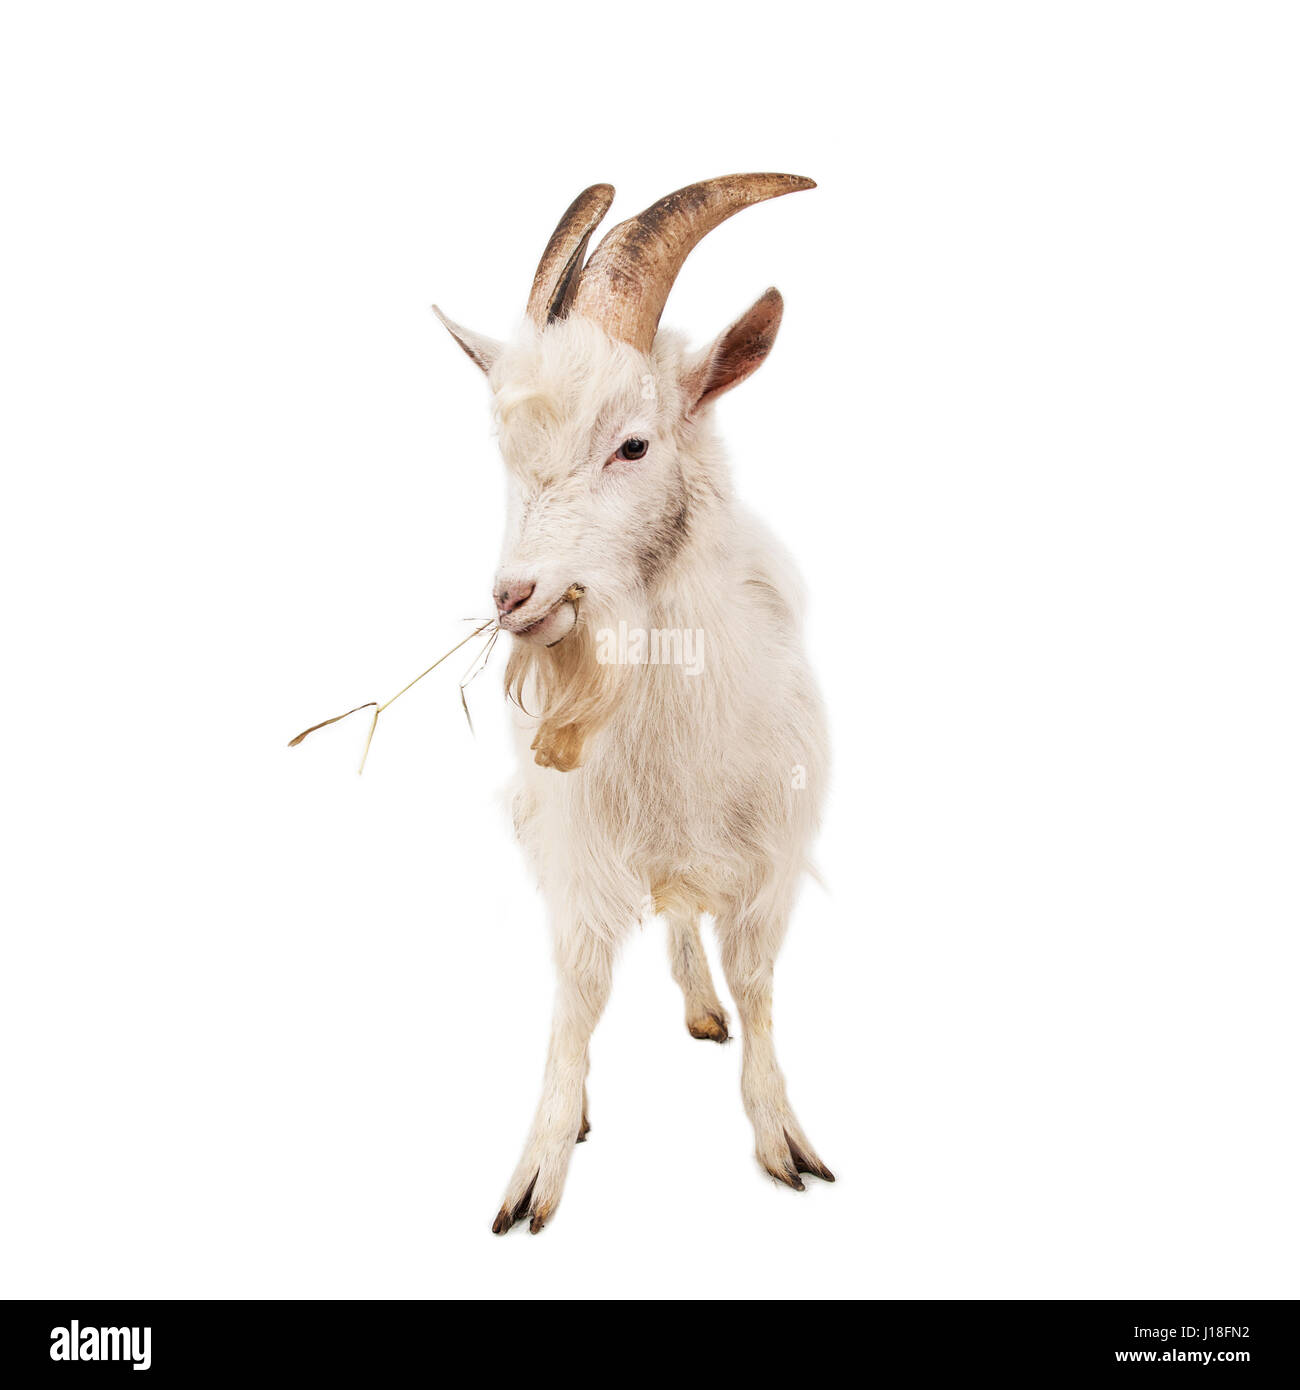 White goat isolated on white background. Stock Photo